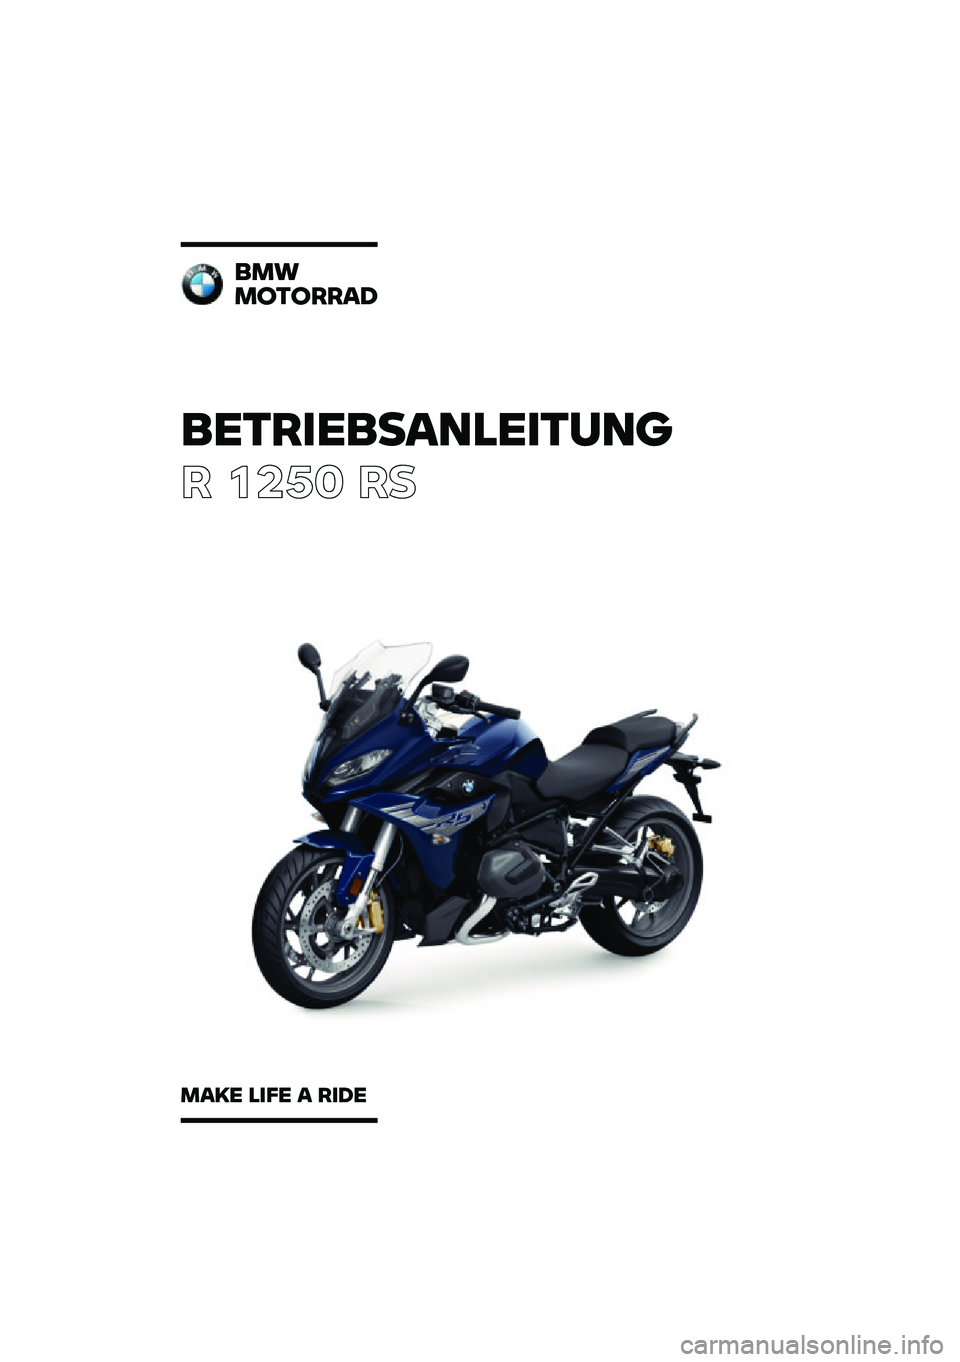 BMW MOTORRAD R 1250 RS 2020  Betriebsanleitung (in German) ���������\b�	�
�����	�\f
� ����	 ��
��
�
�
������\b�
�
�\b�� �
��� �\b ���� 